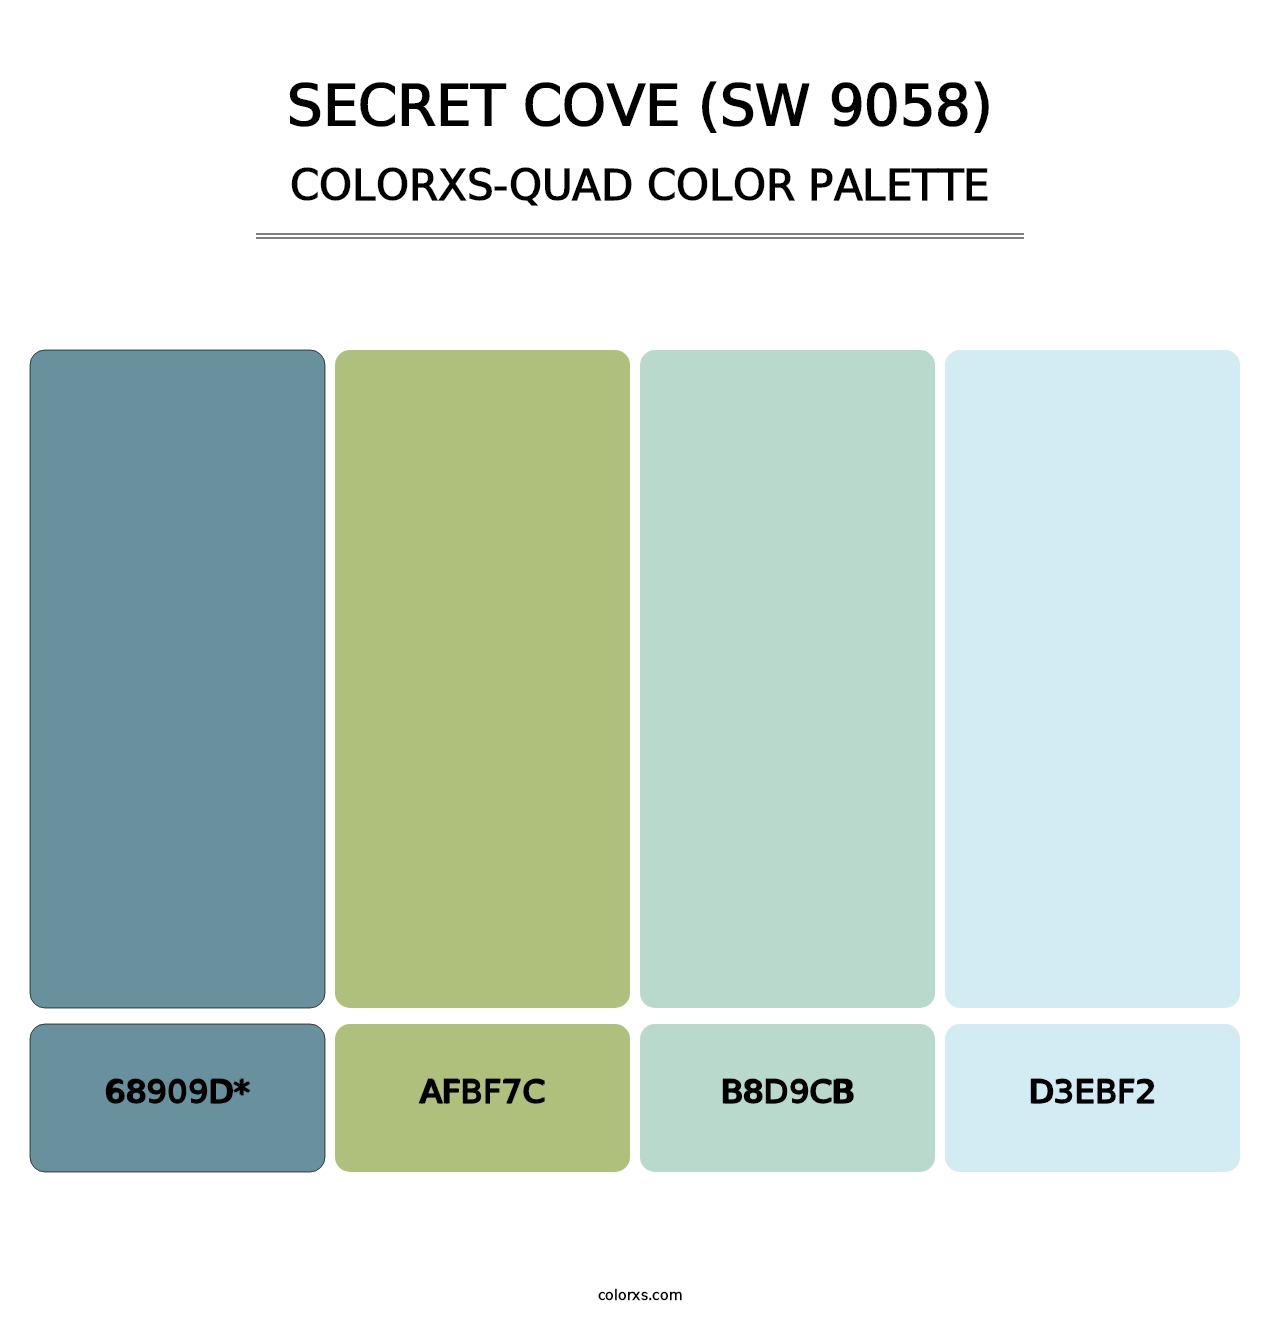 Secret Cove (SW 9058) - Colorxs Quad Palette